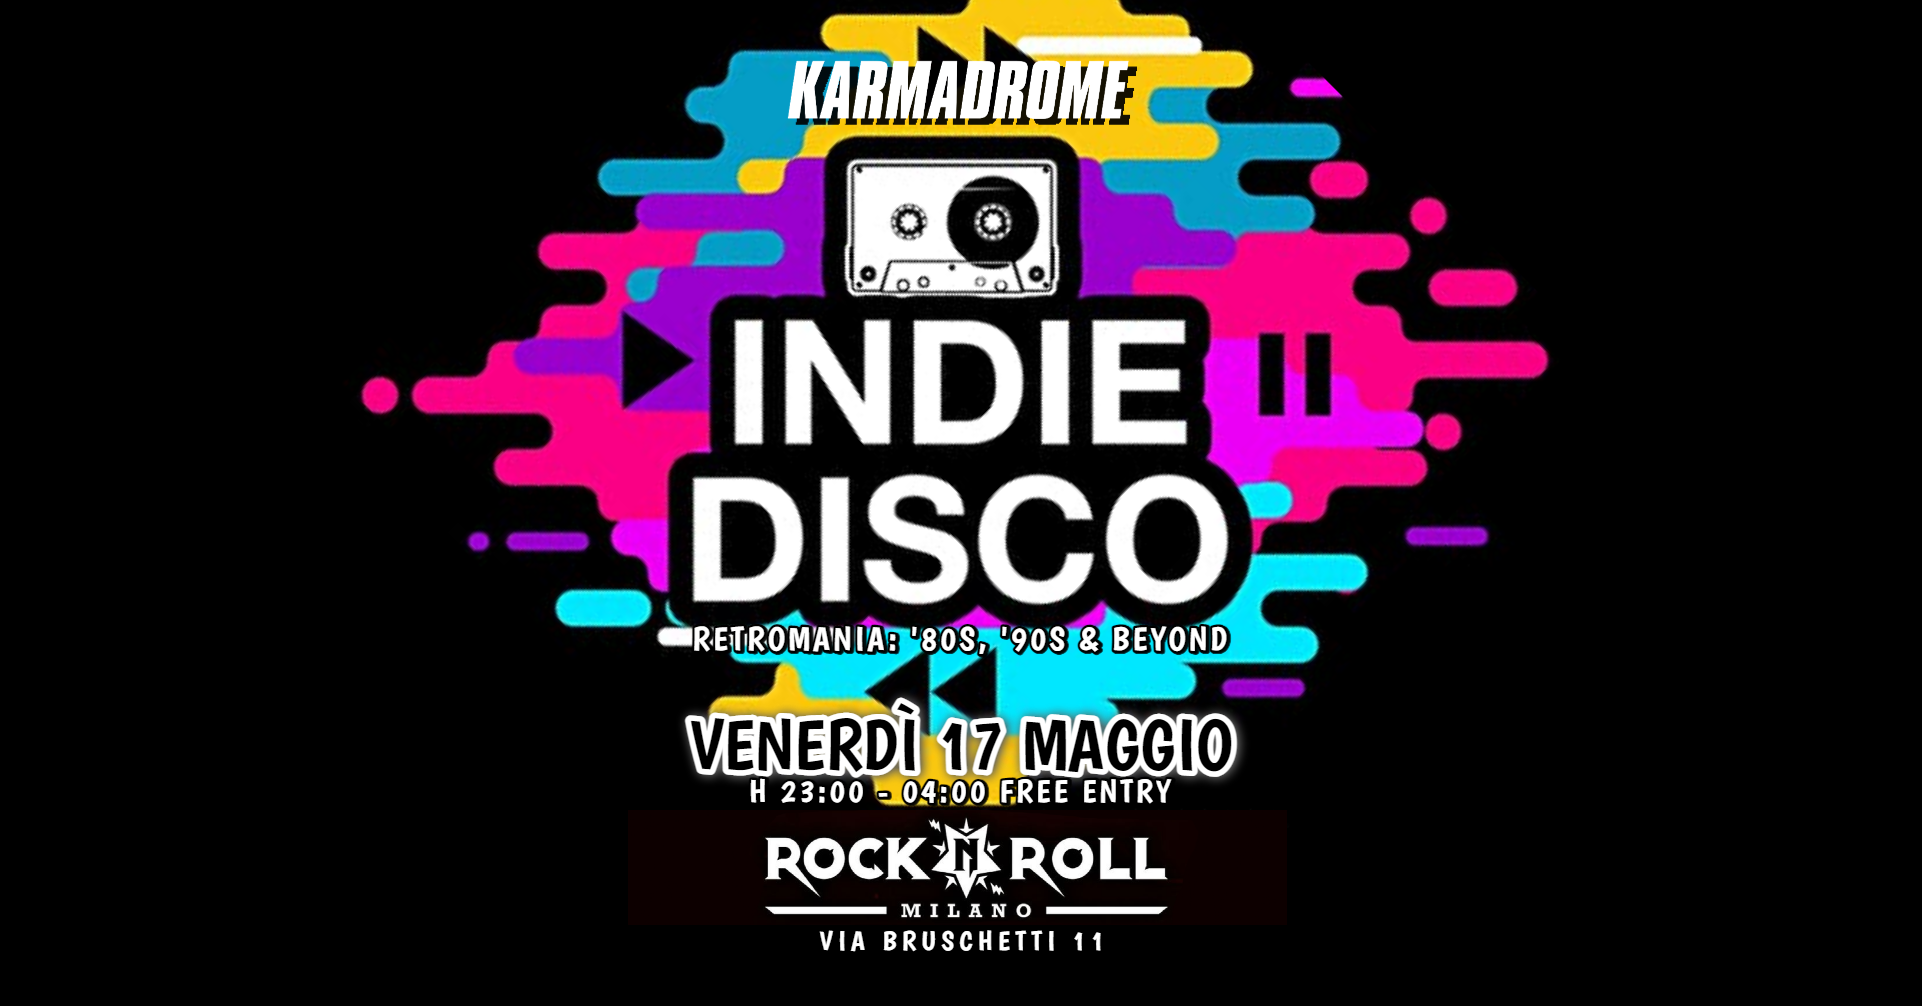 Karmadrome: Indie-Disco [Retromania '80s, '90s & beyond] - Página trasera